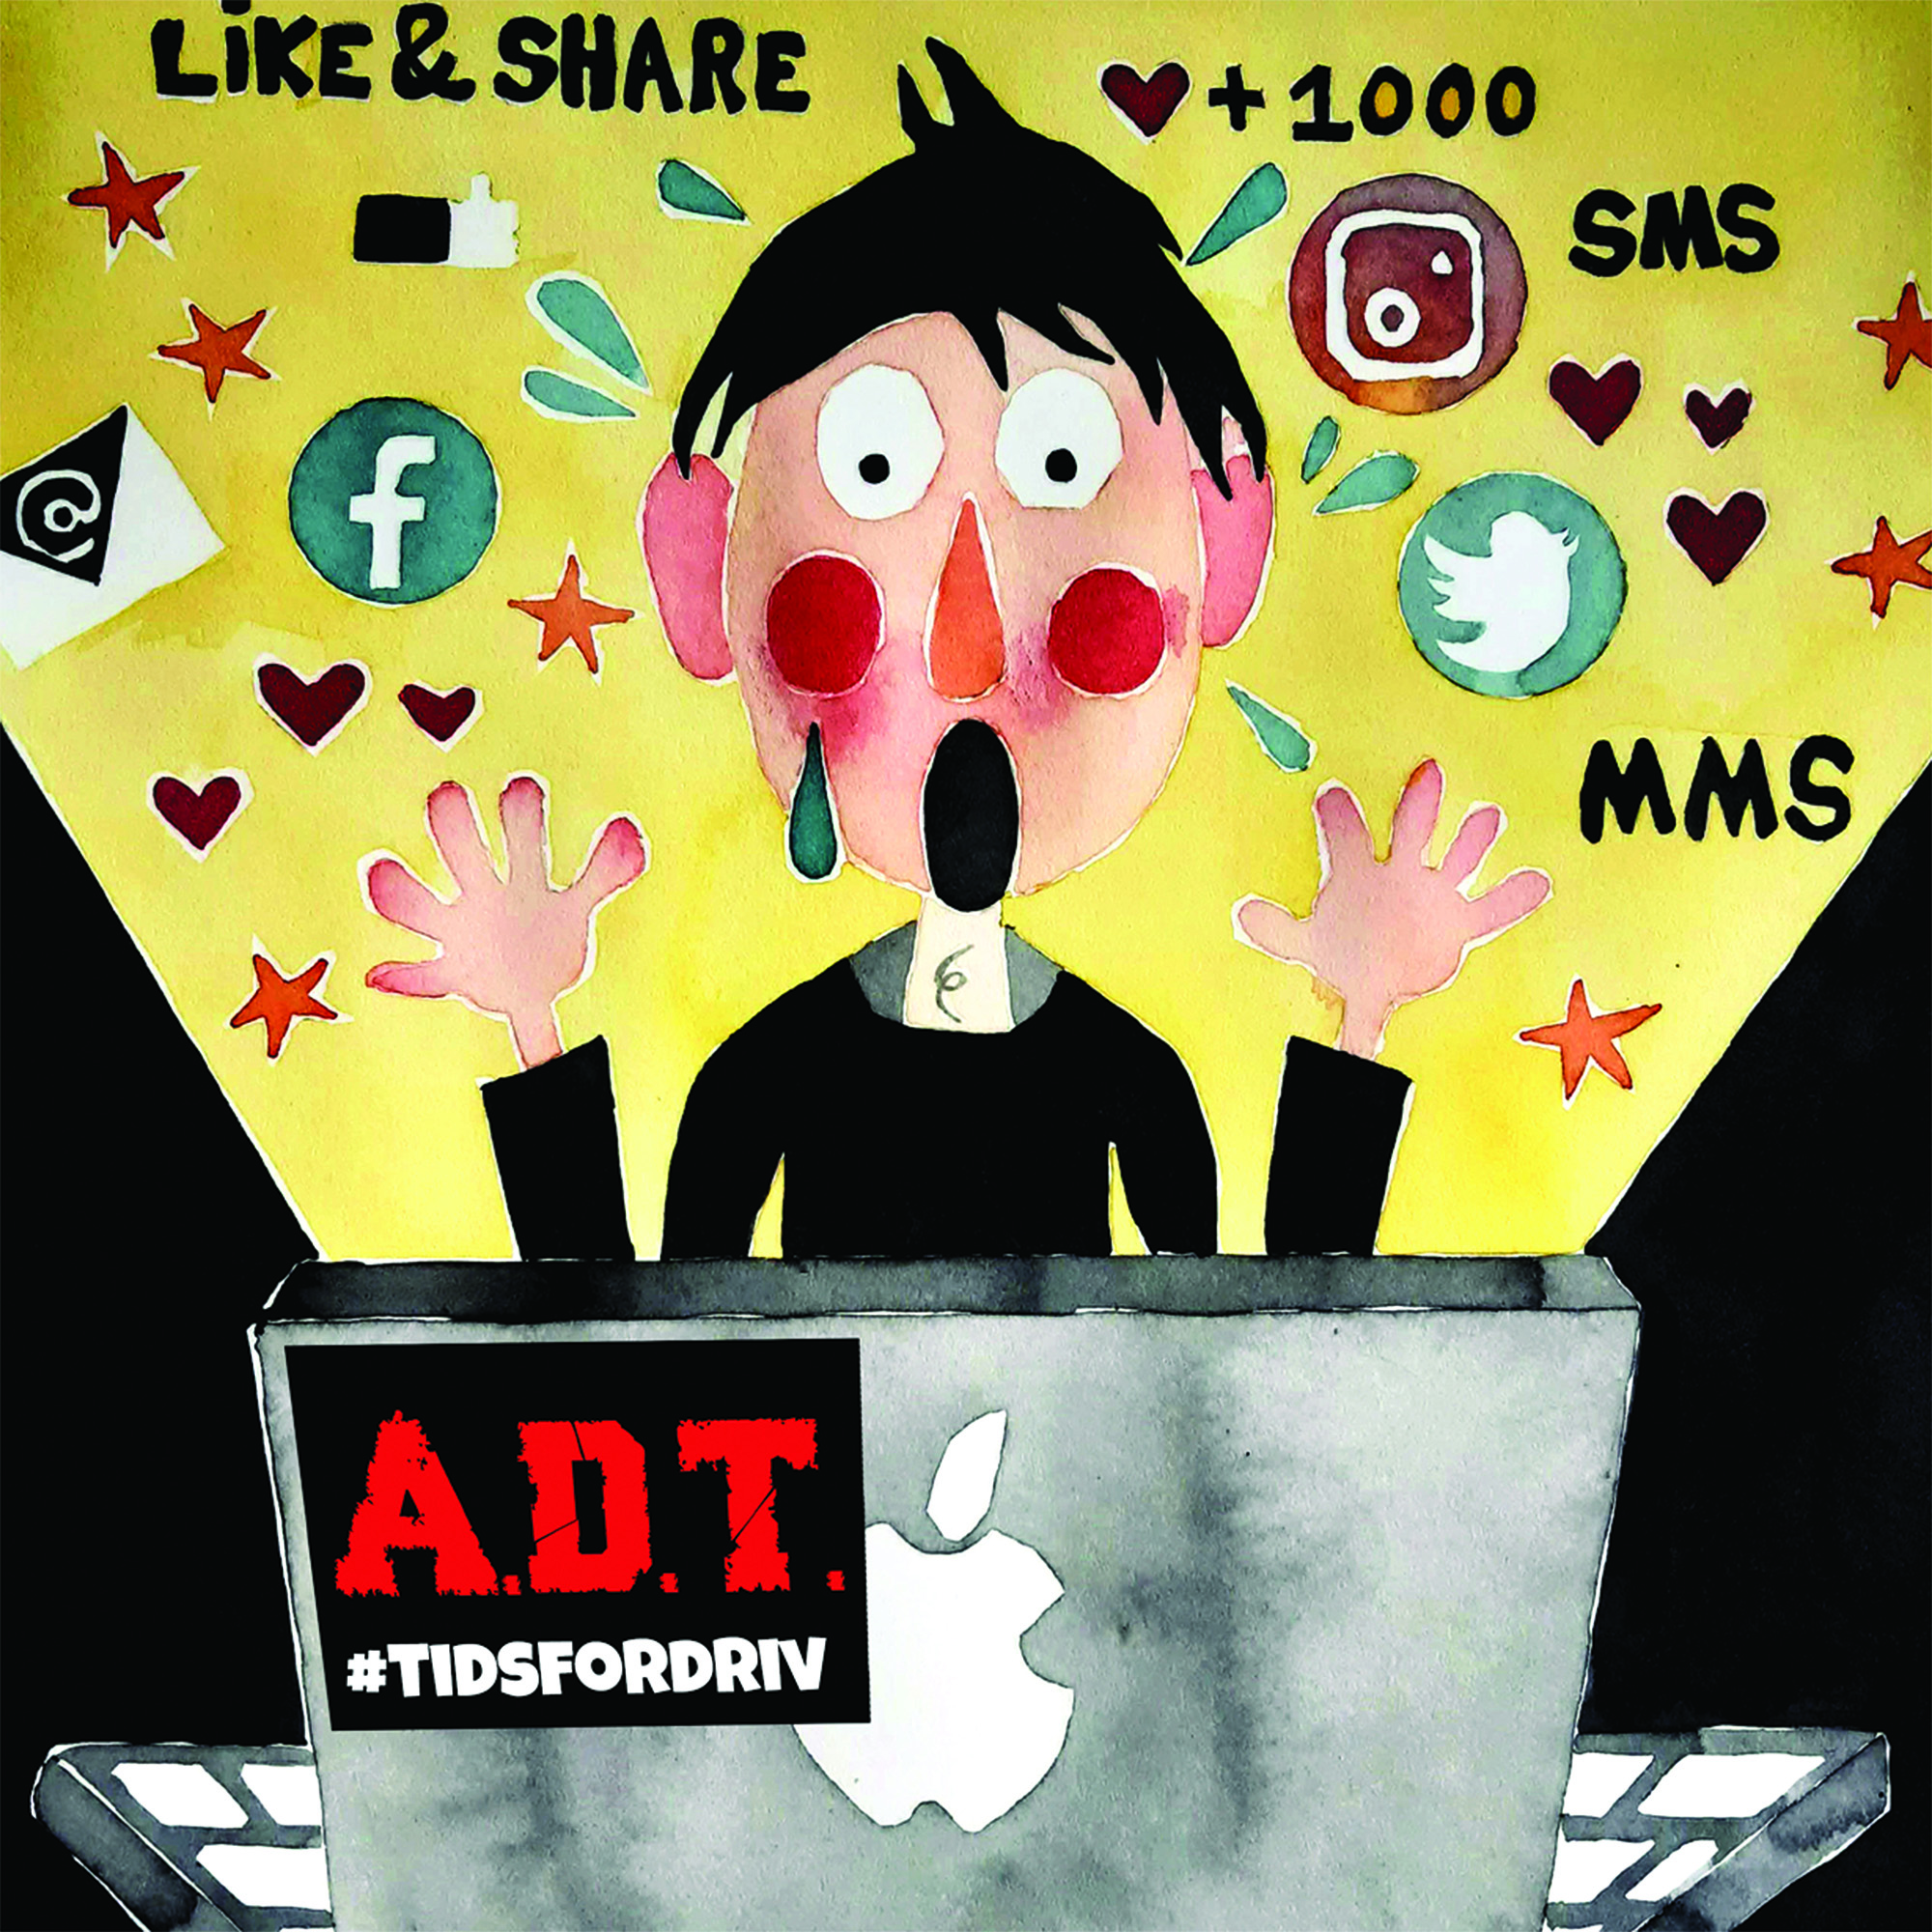 A.D.T. - Audio Diktatorisk Tyranni